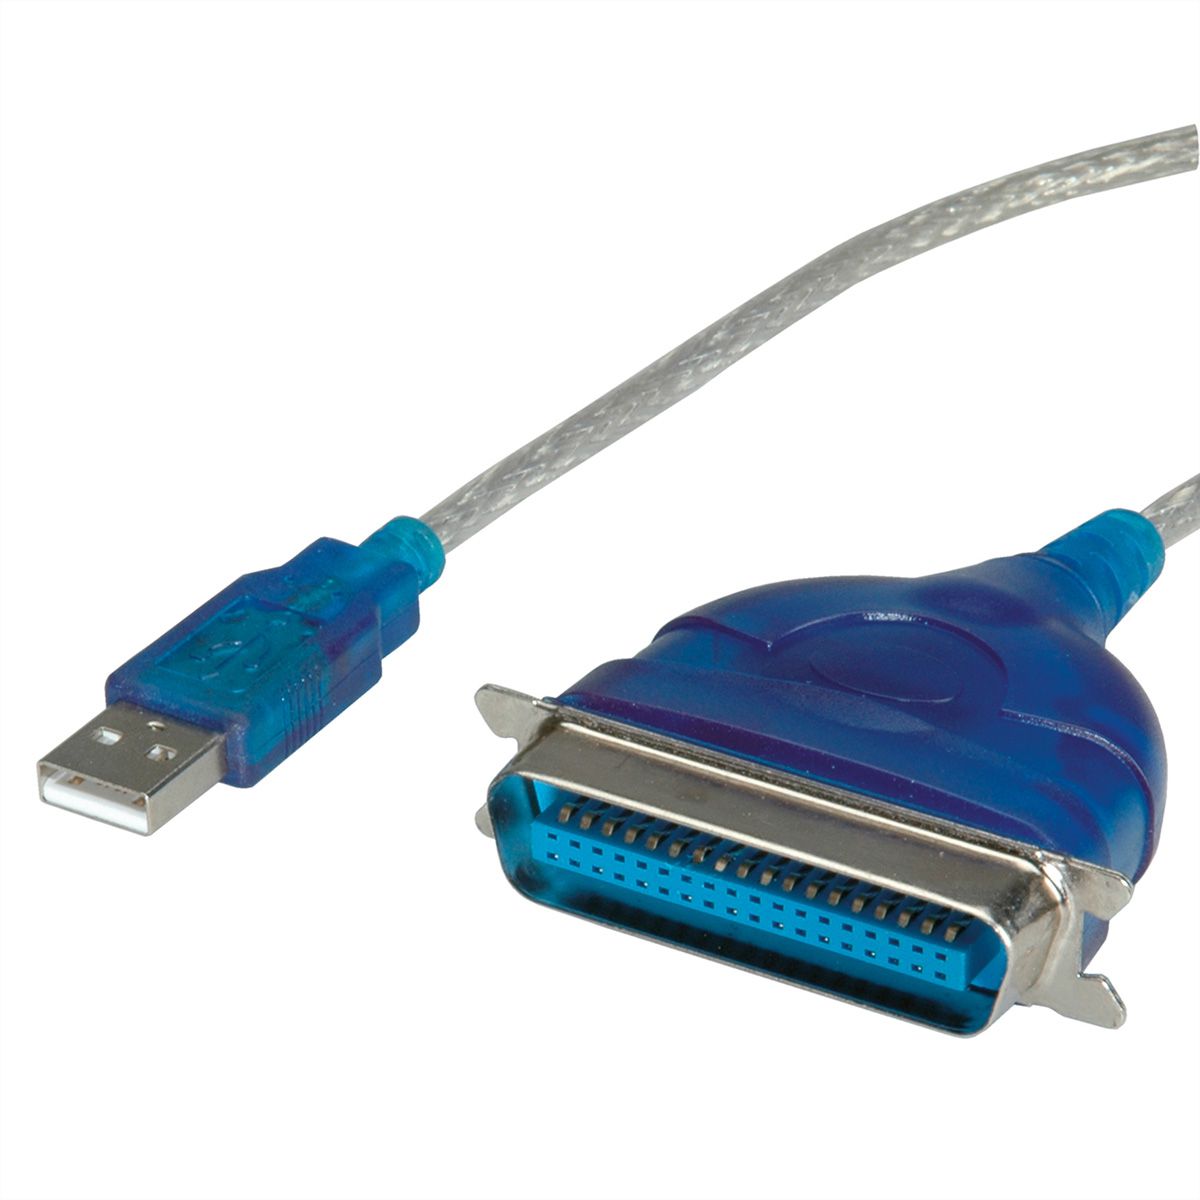 Câble adaptateur USB vers Parallèle